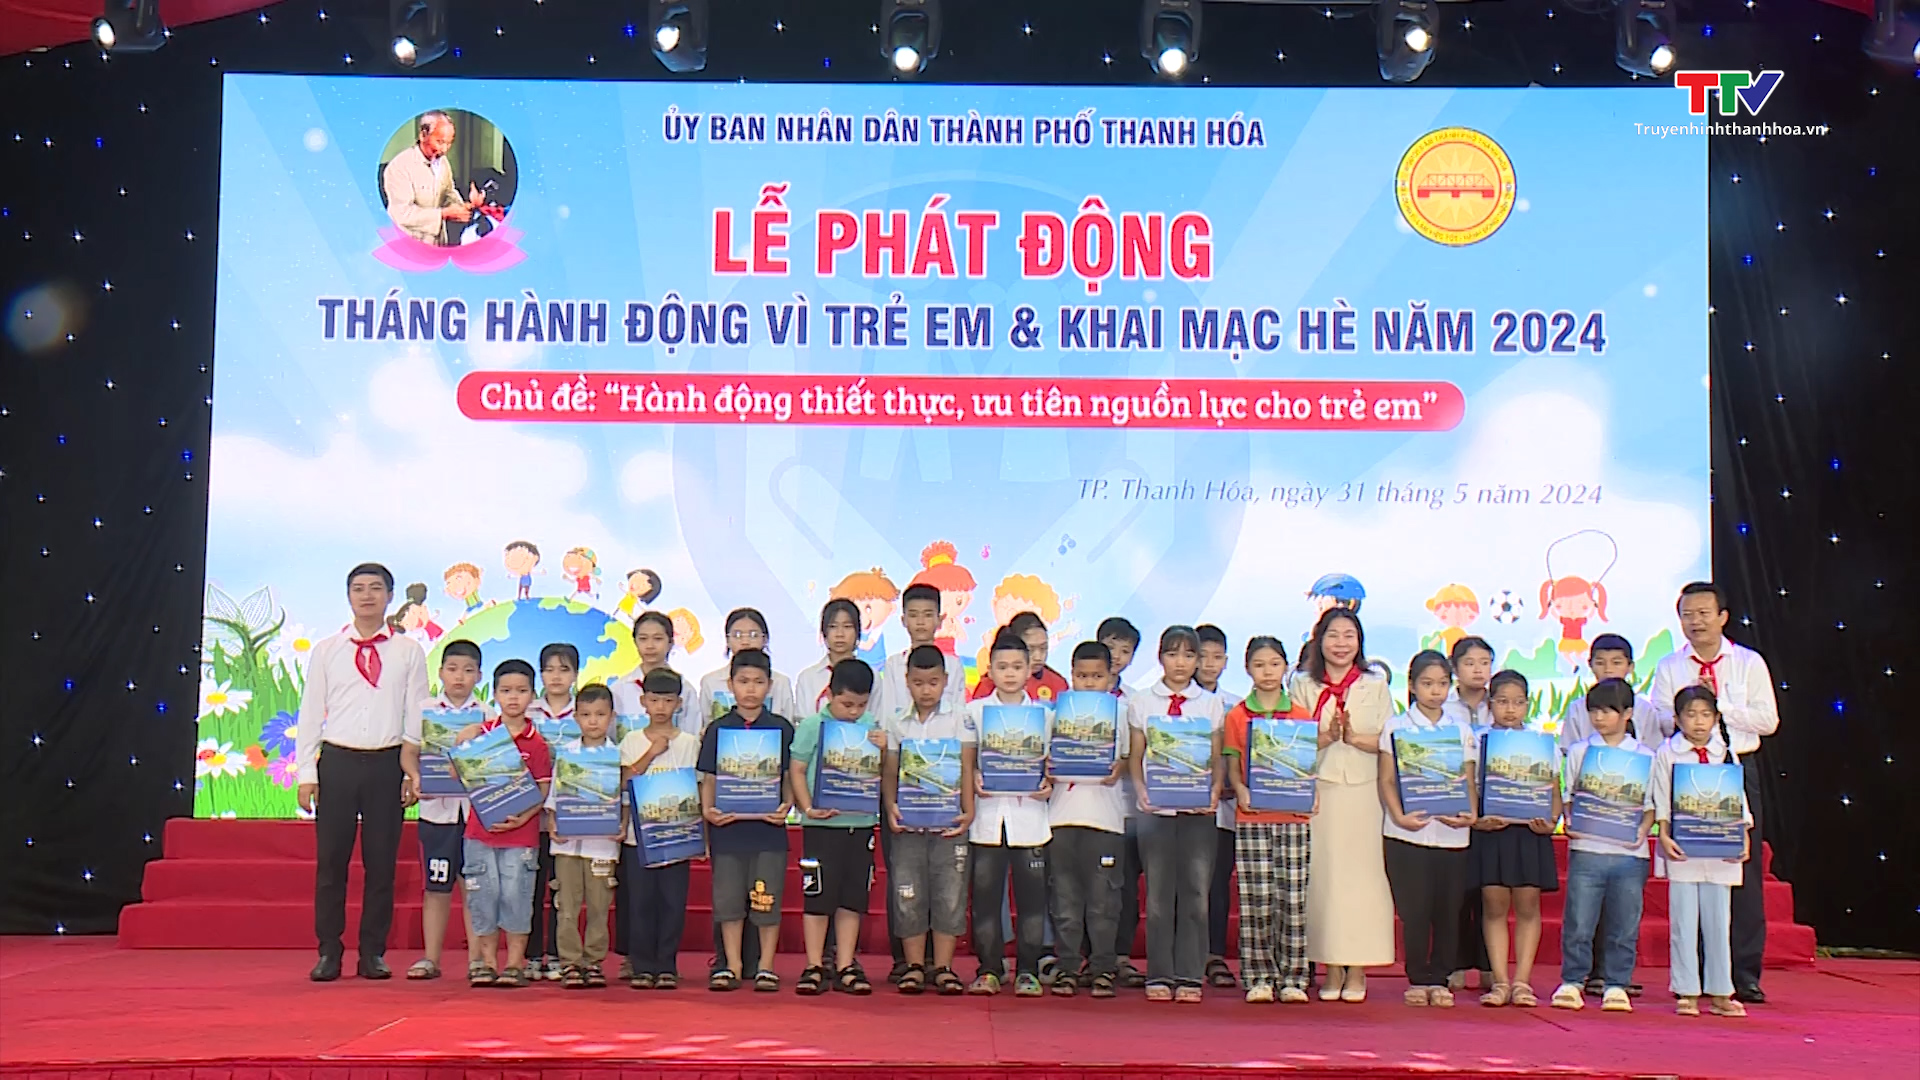 Tin tổng hợp hoạt động chính trị, kinh tế, văn hóa, xã hội trên địa bàn thành phố Thanh Hóa ngày 5/6/2024- Ảnh 4.